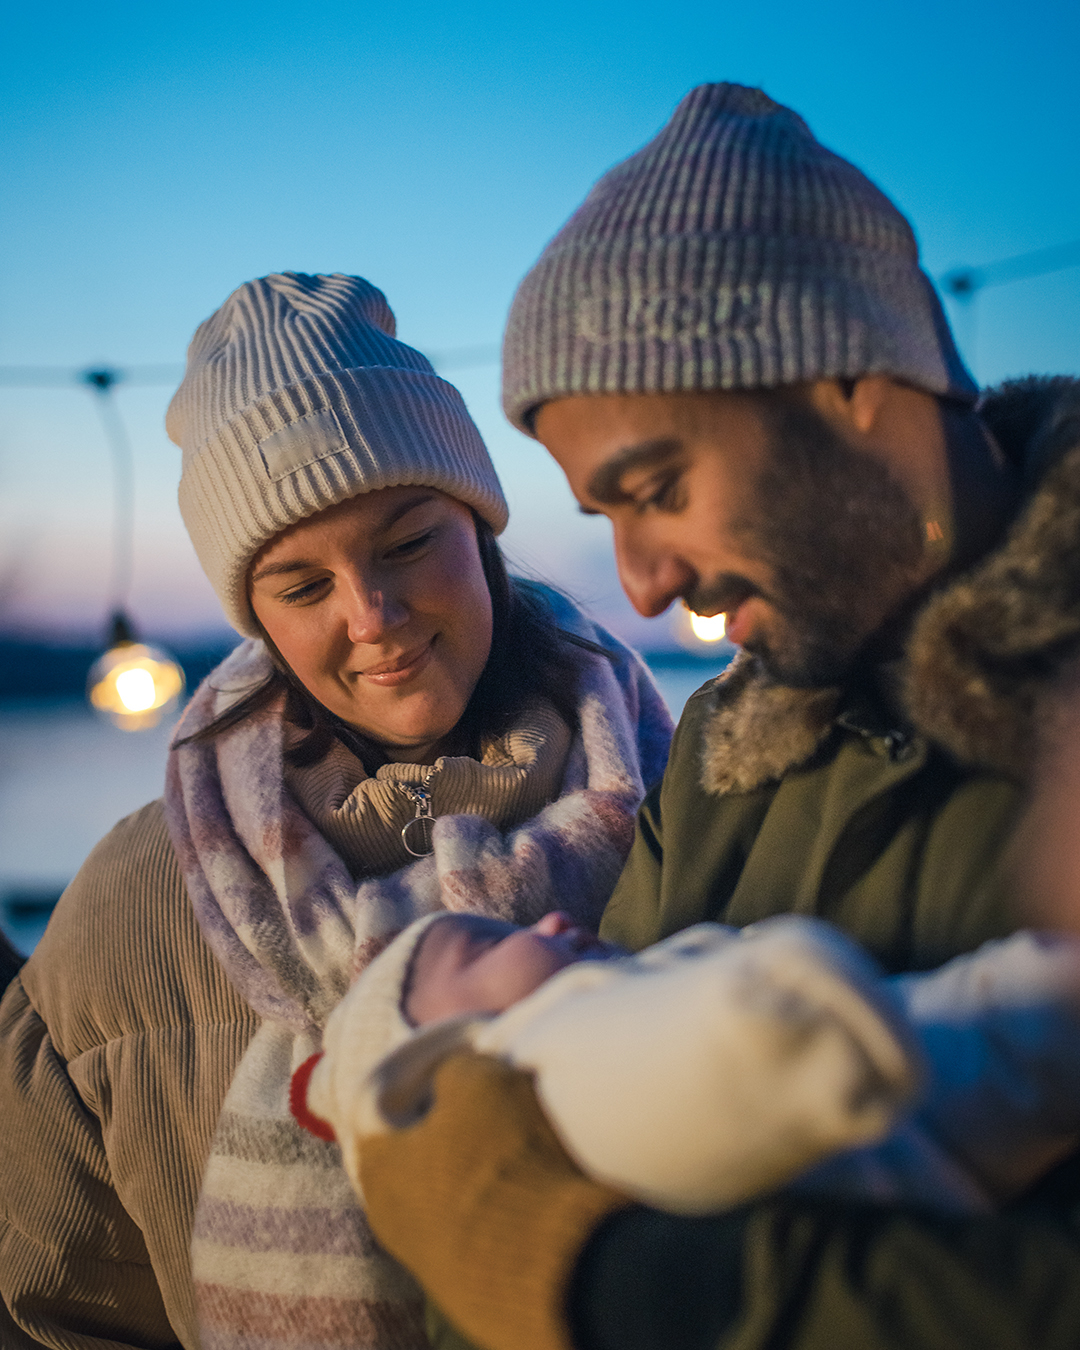 En man och en kvinna i ytterkläder står utomhus. Mannen håller i en bebis.